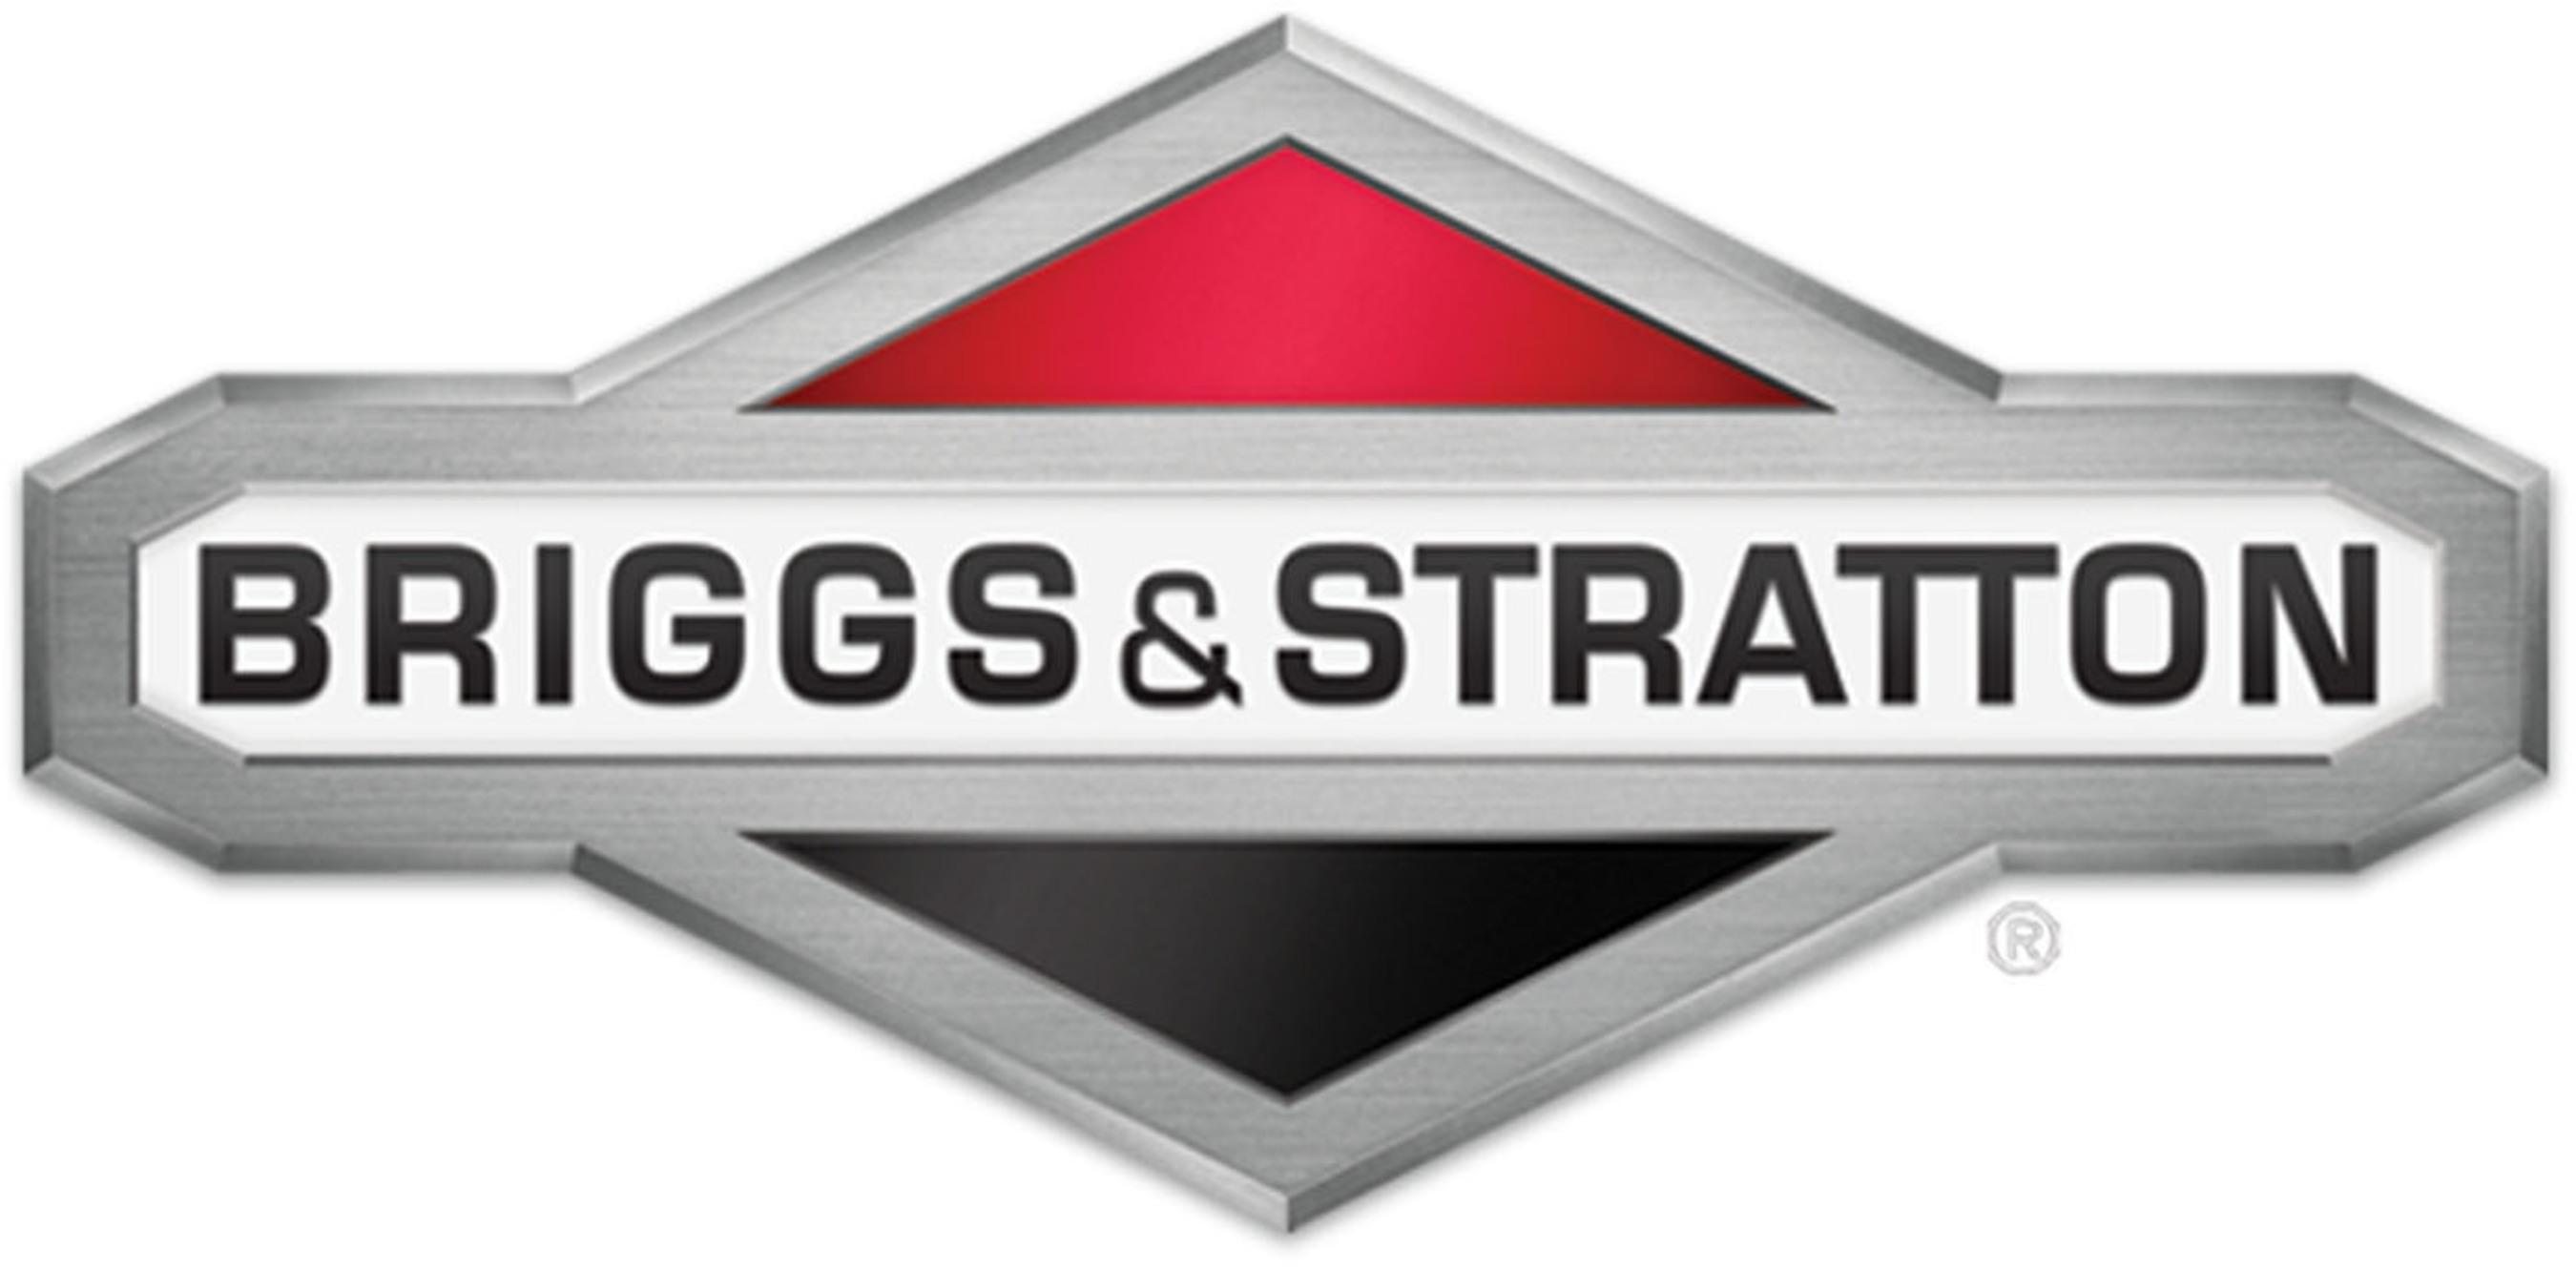 Briggs & Stratton Corporation logo.